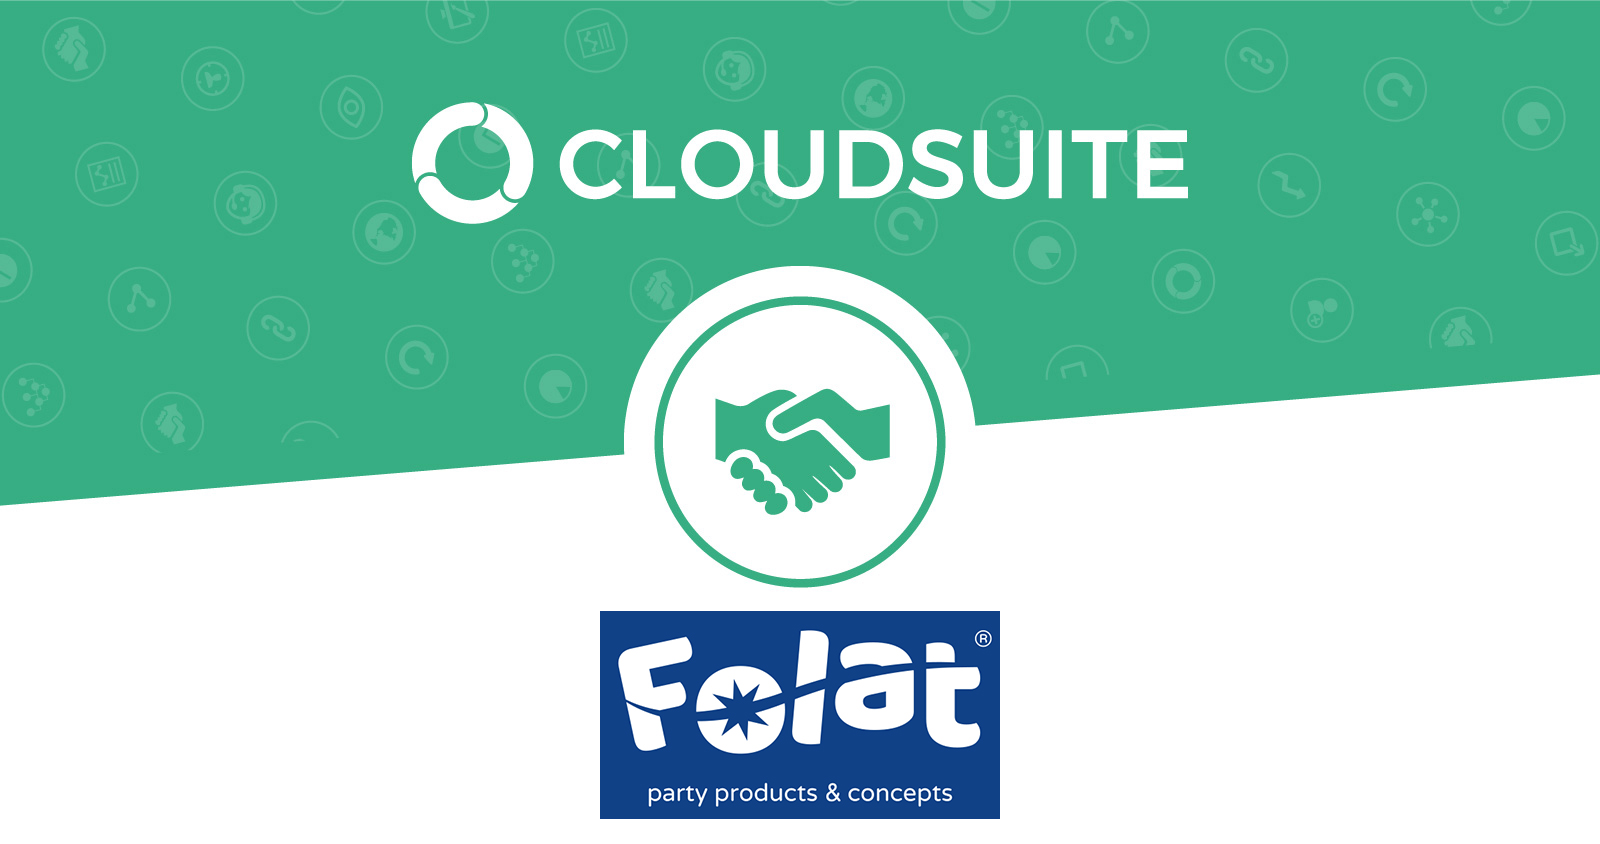 Feestartikelen leverancier Folat kiest voor CloudSuite